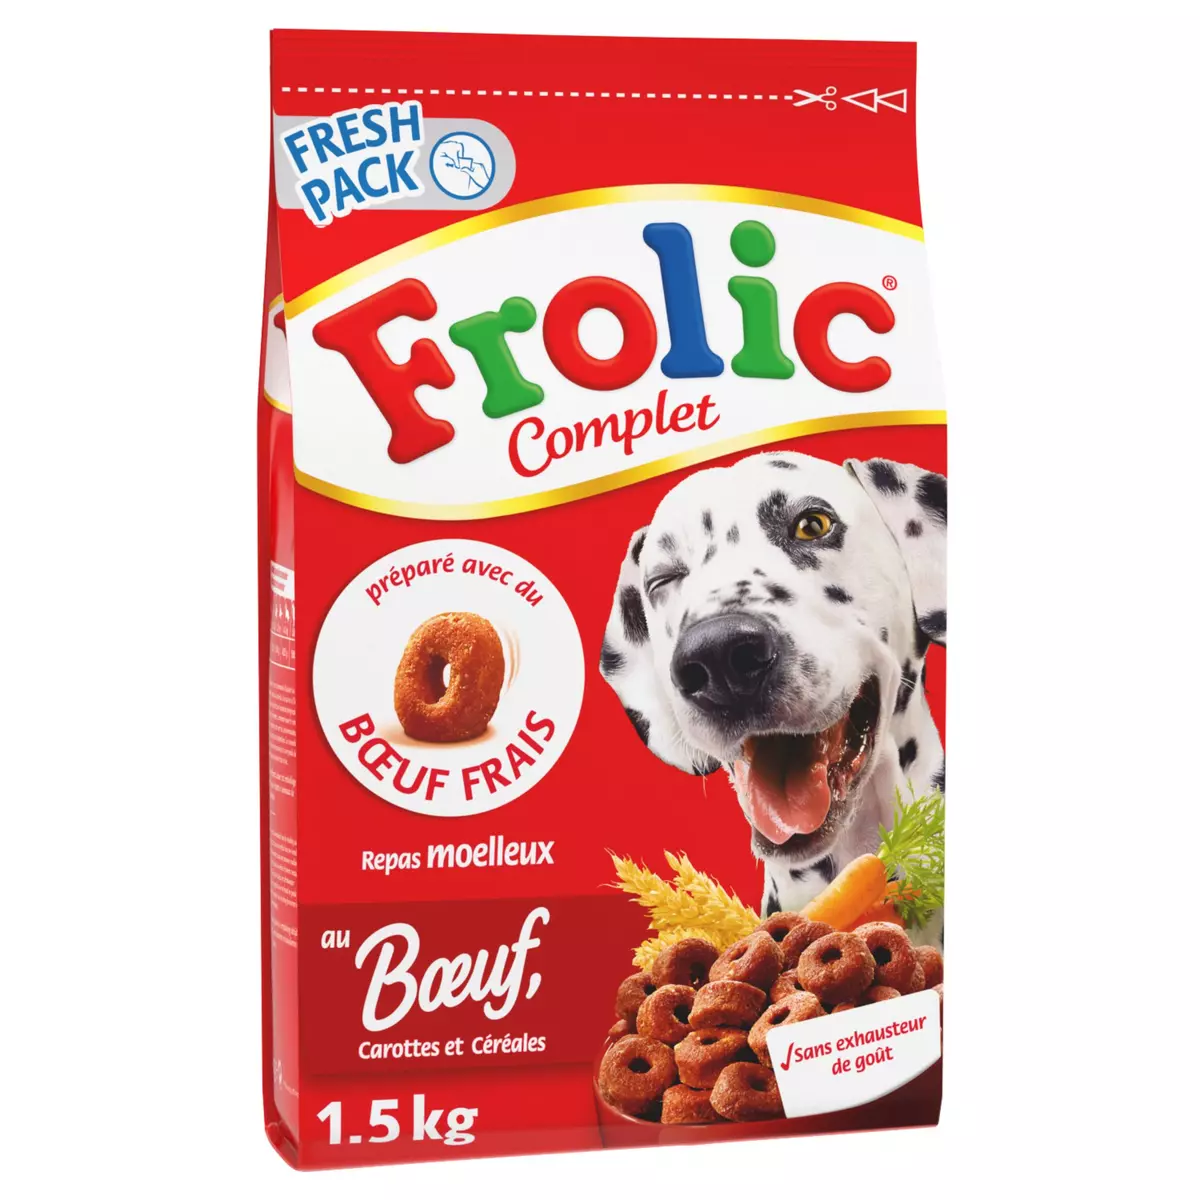 FROLIC Complet croquettes moelleuses boeuf carotte céréale pour chien 1,5kg